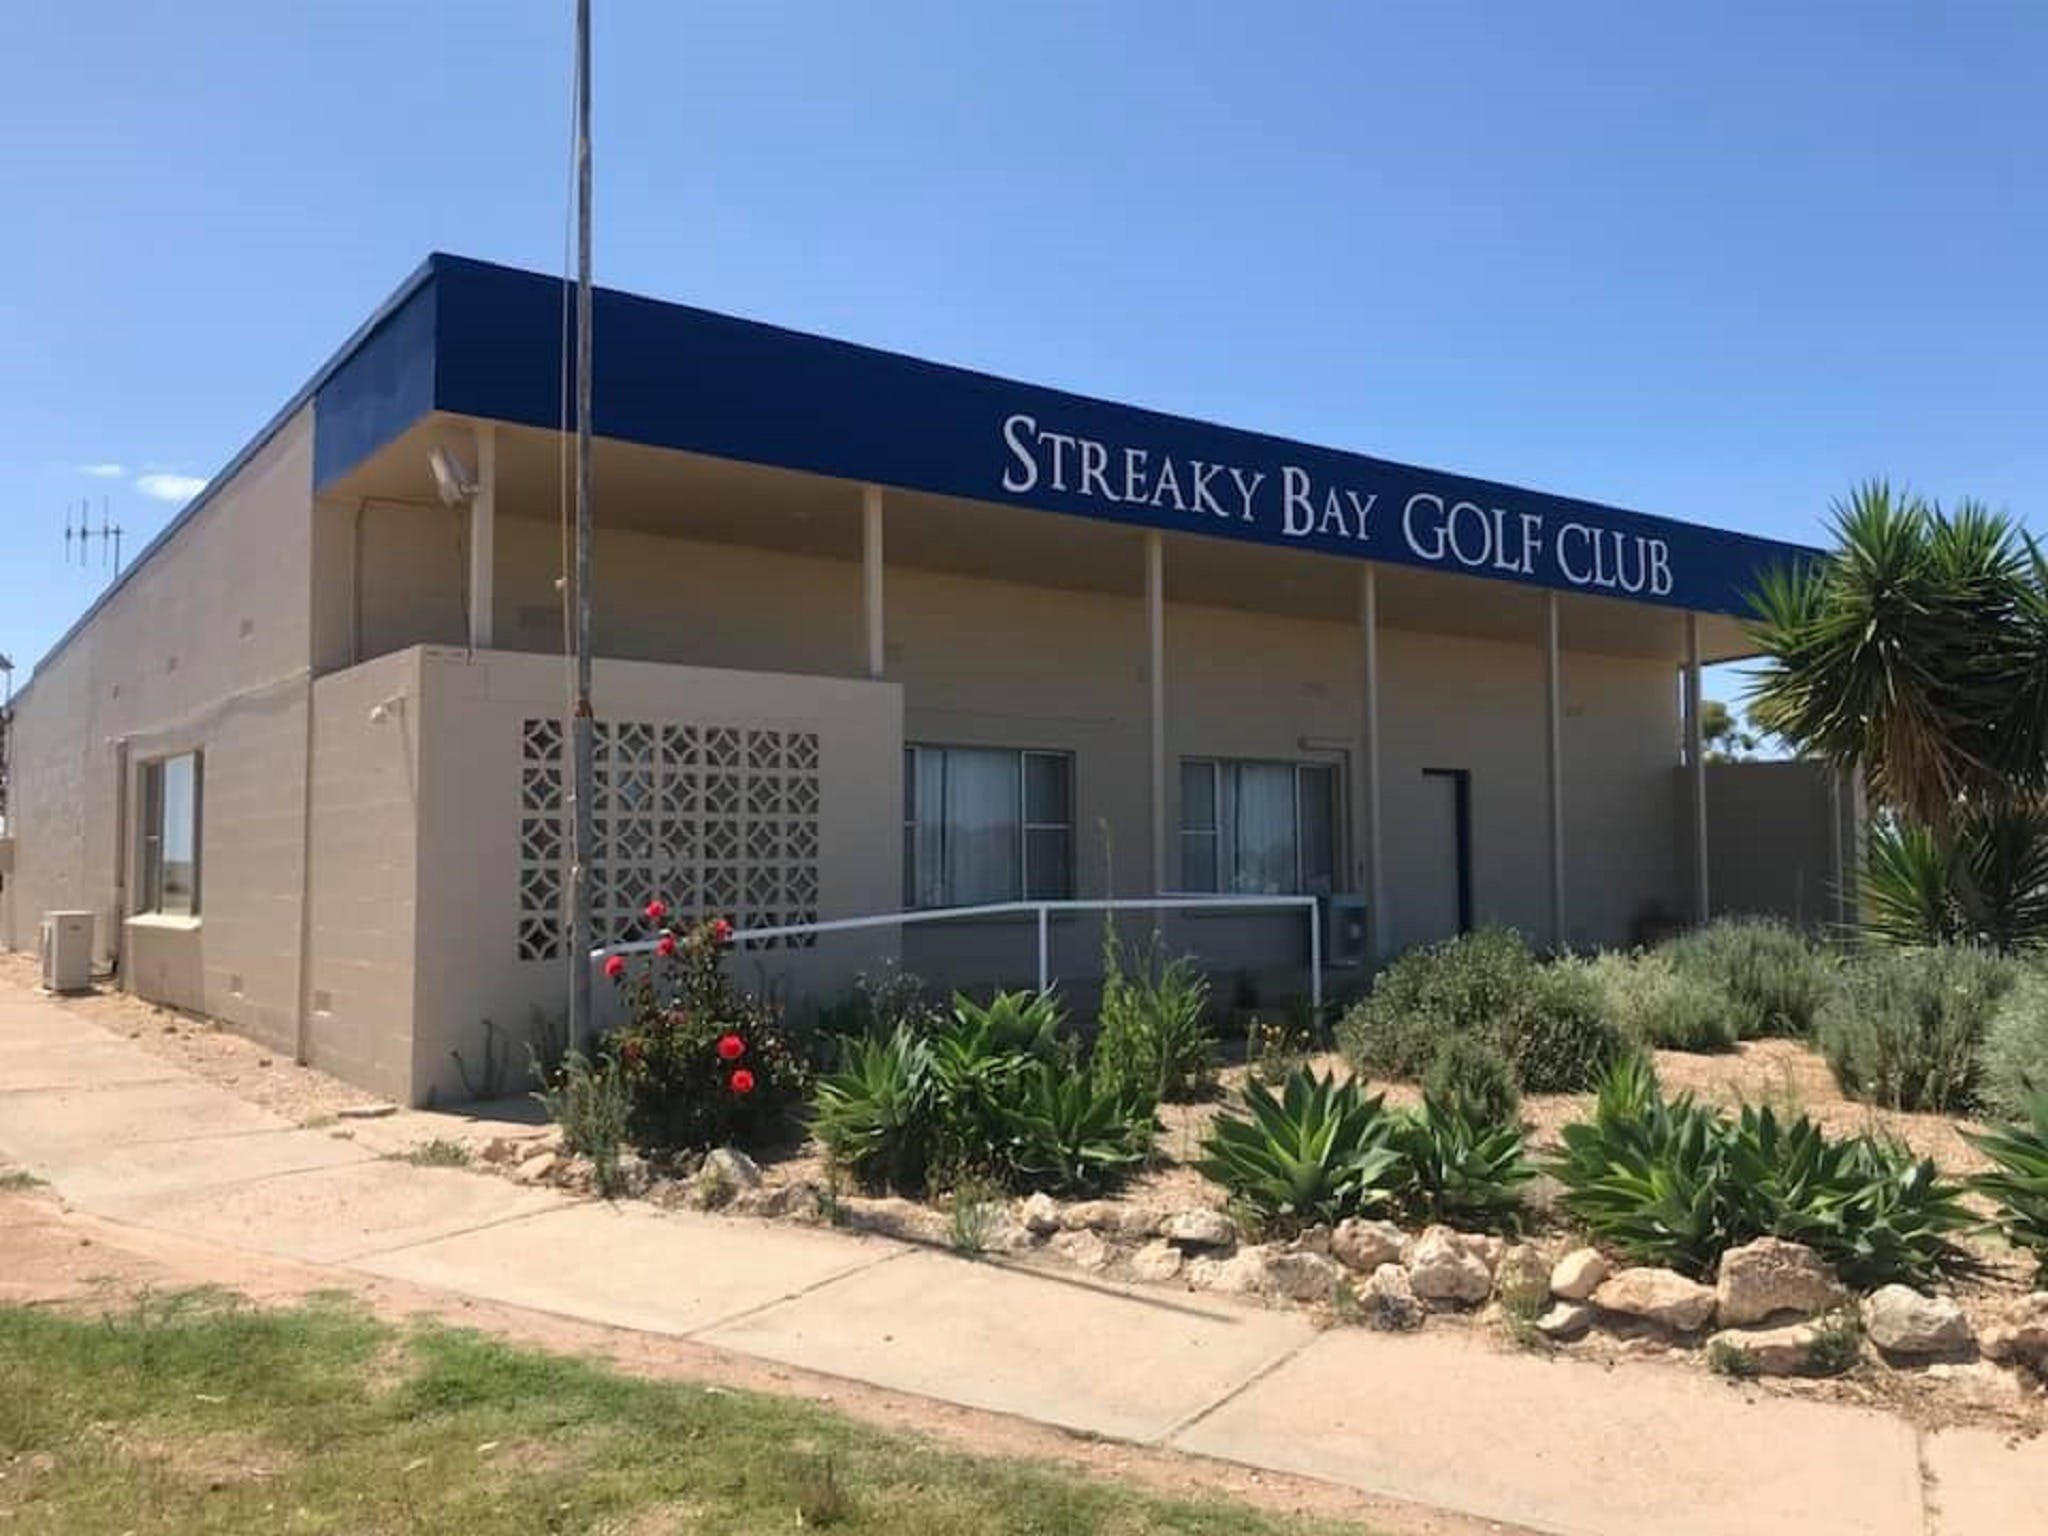 Streaky Bay Golf Club